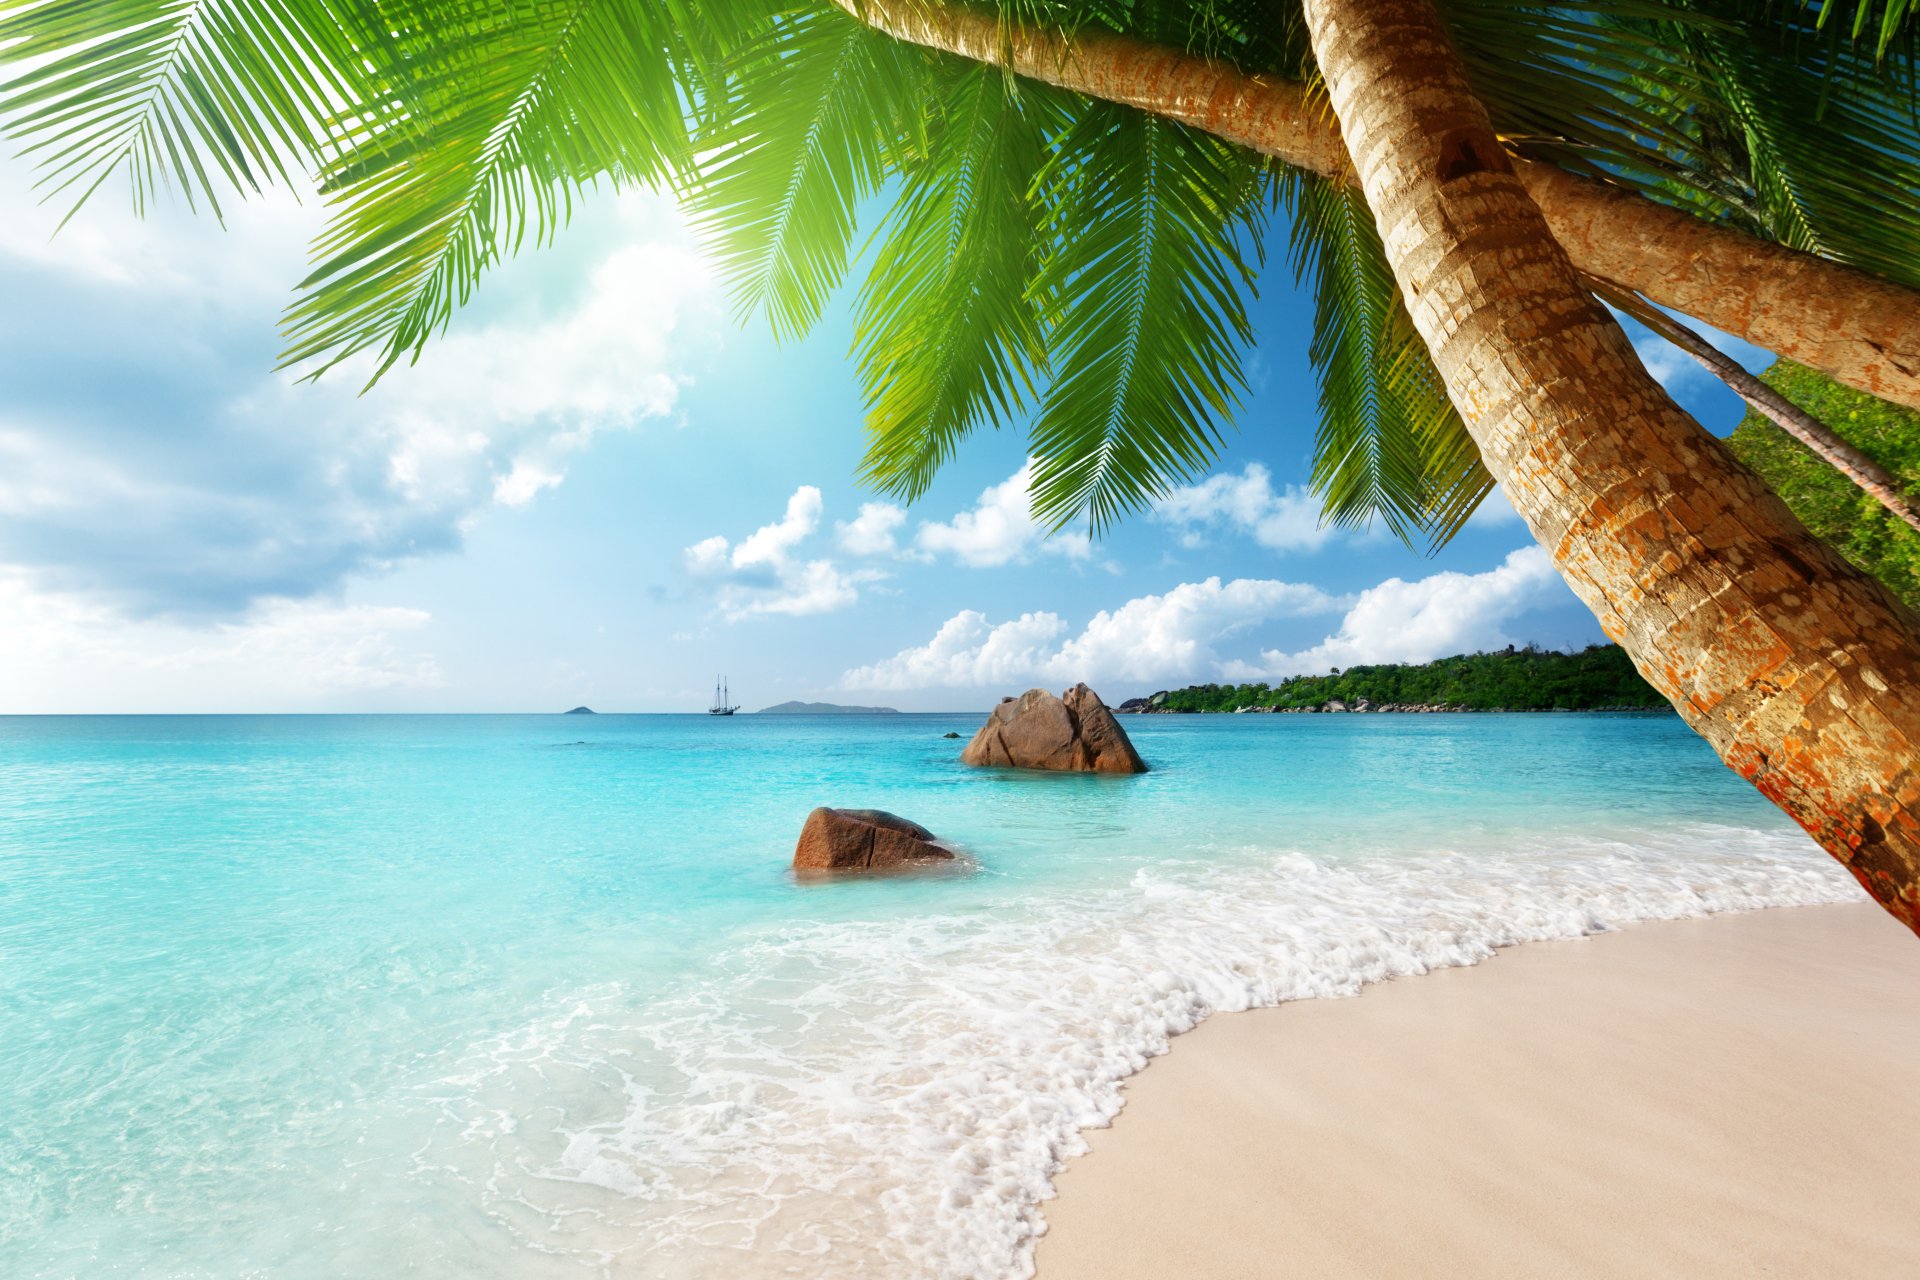 тропический рай пляж побережье море синий изумруд океан палм летом песок отдых тропики солнце остров берег пальмы